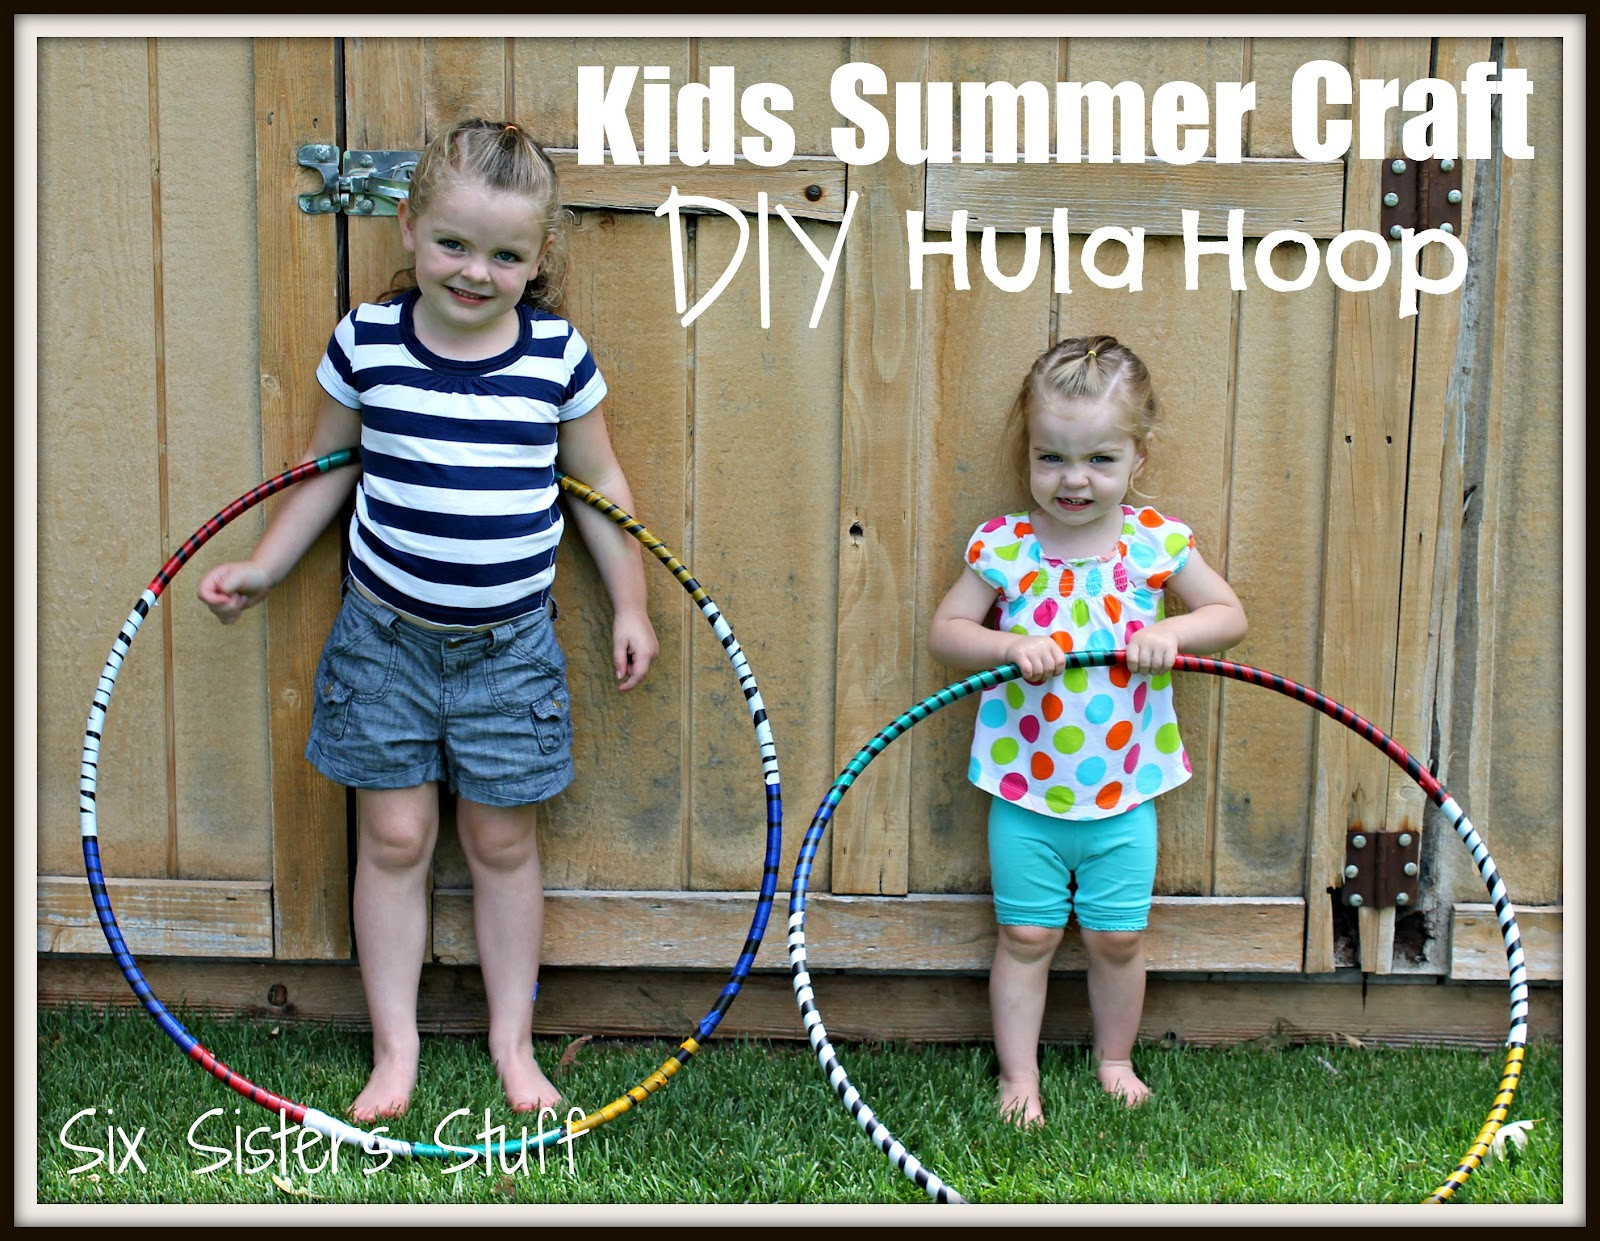 Best ideas about DIY Hula Hoop
. Save or Pin Kids Summer Craft DIY Hula Hoop Now.